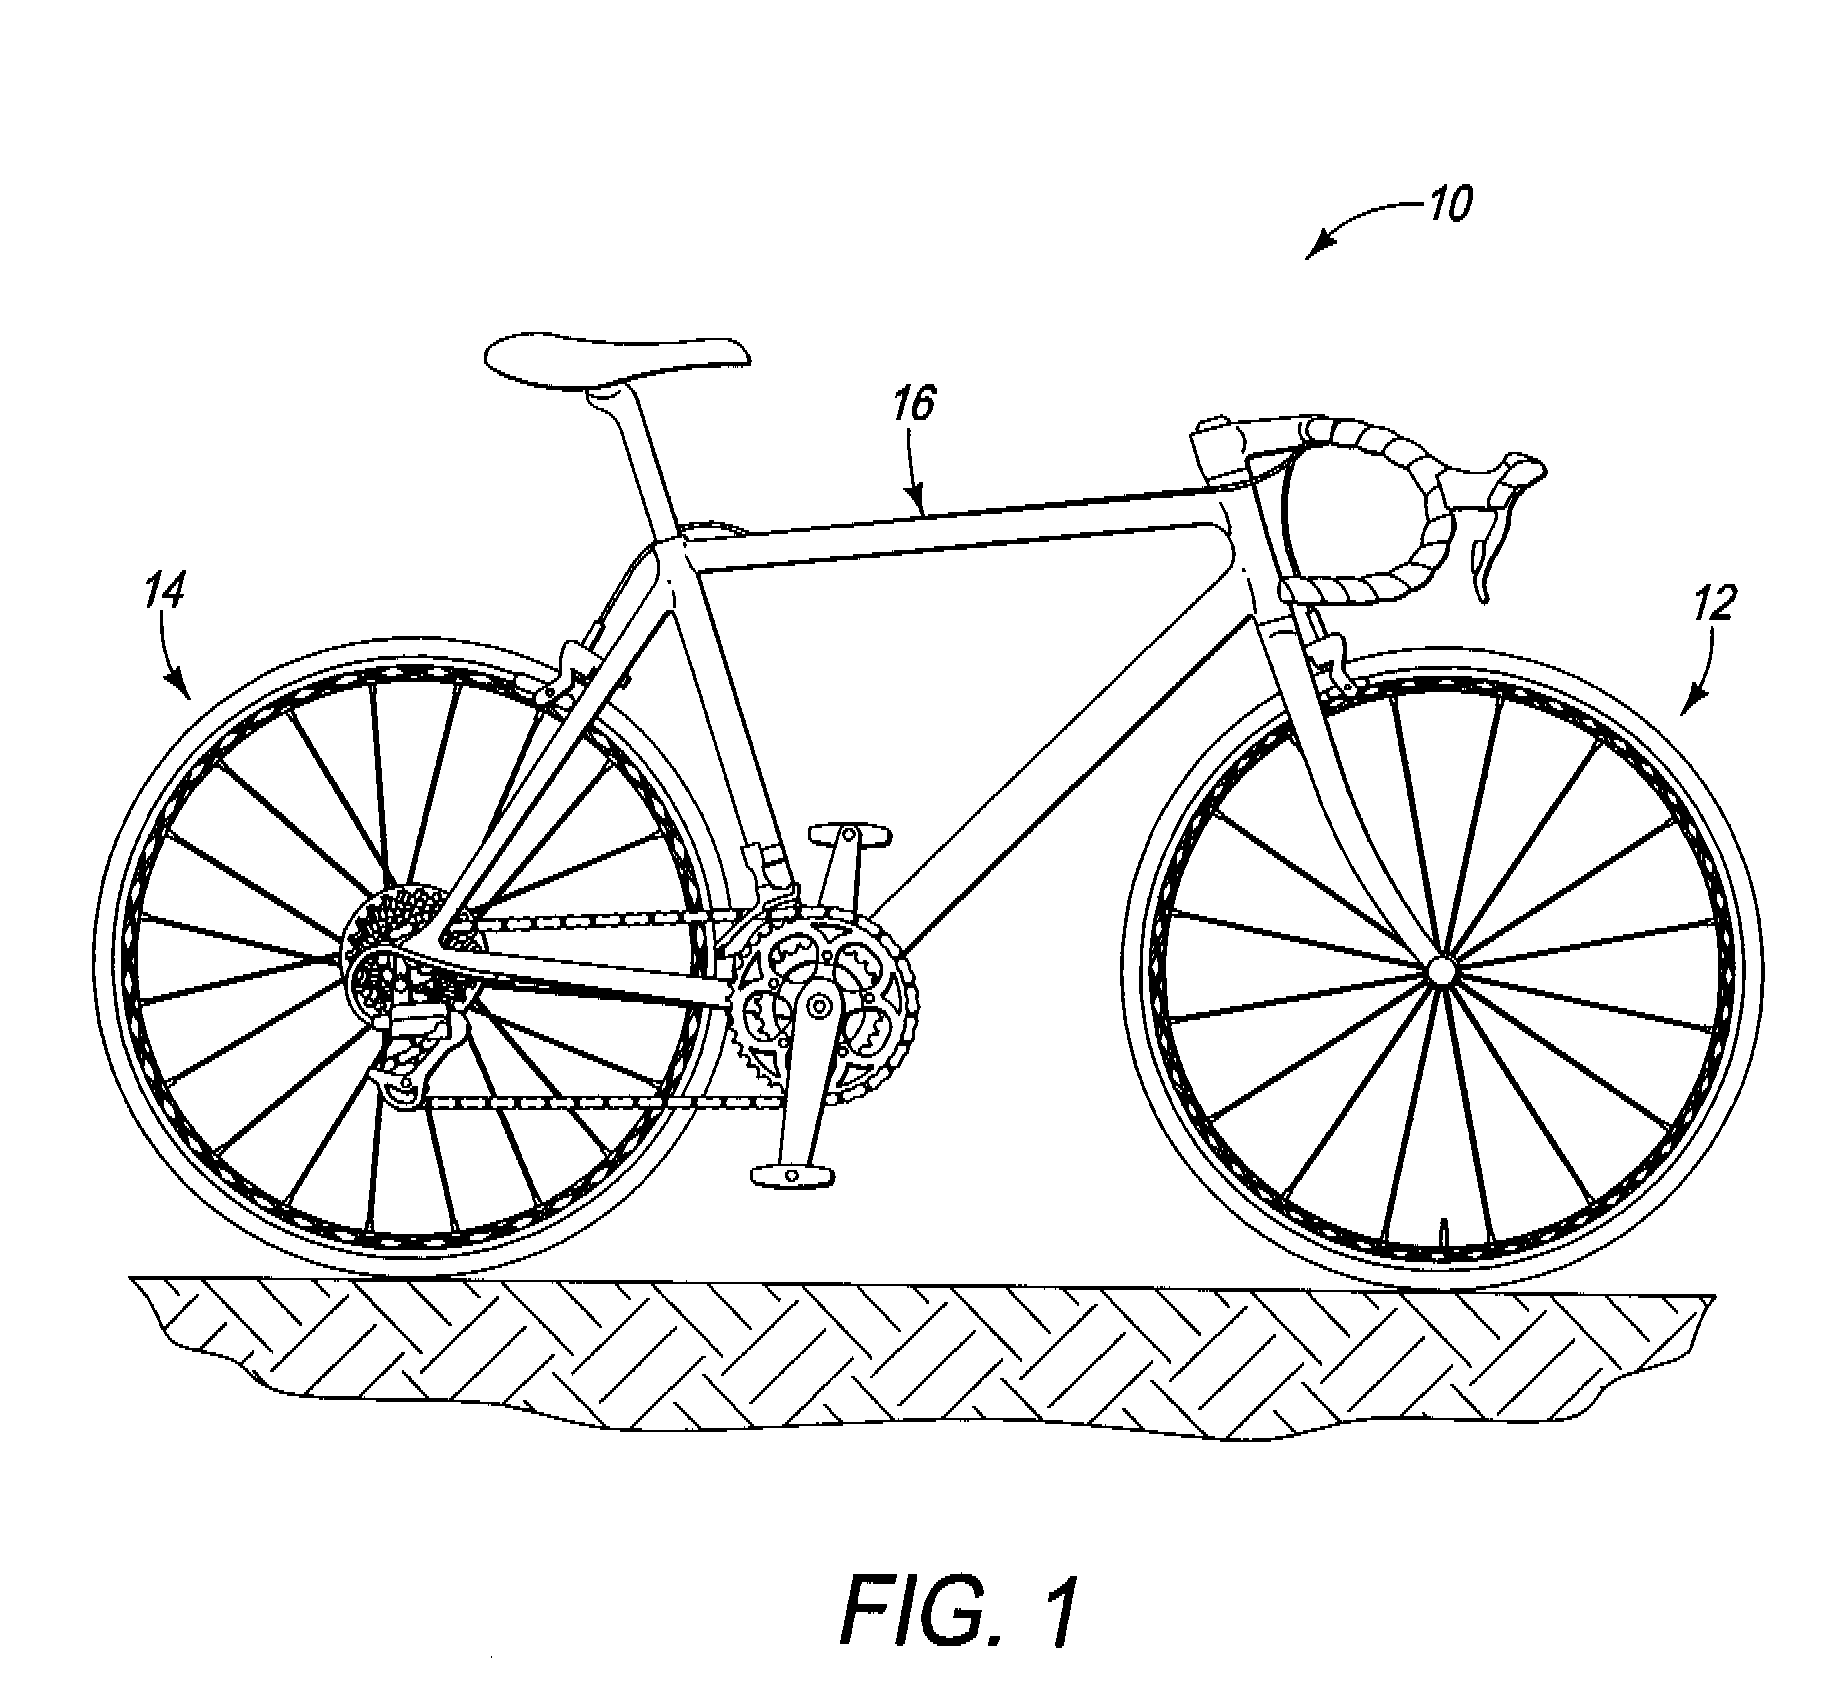 Bicycle rim